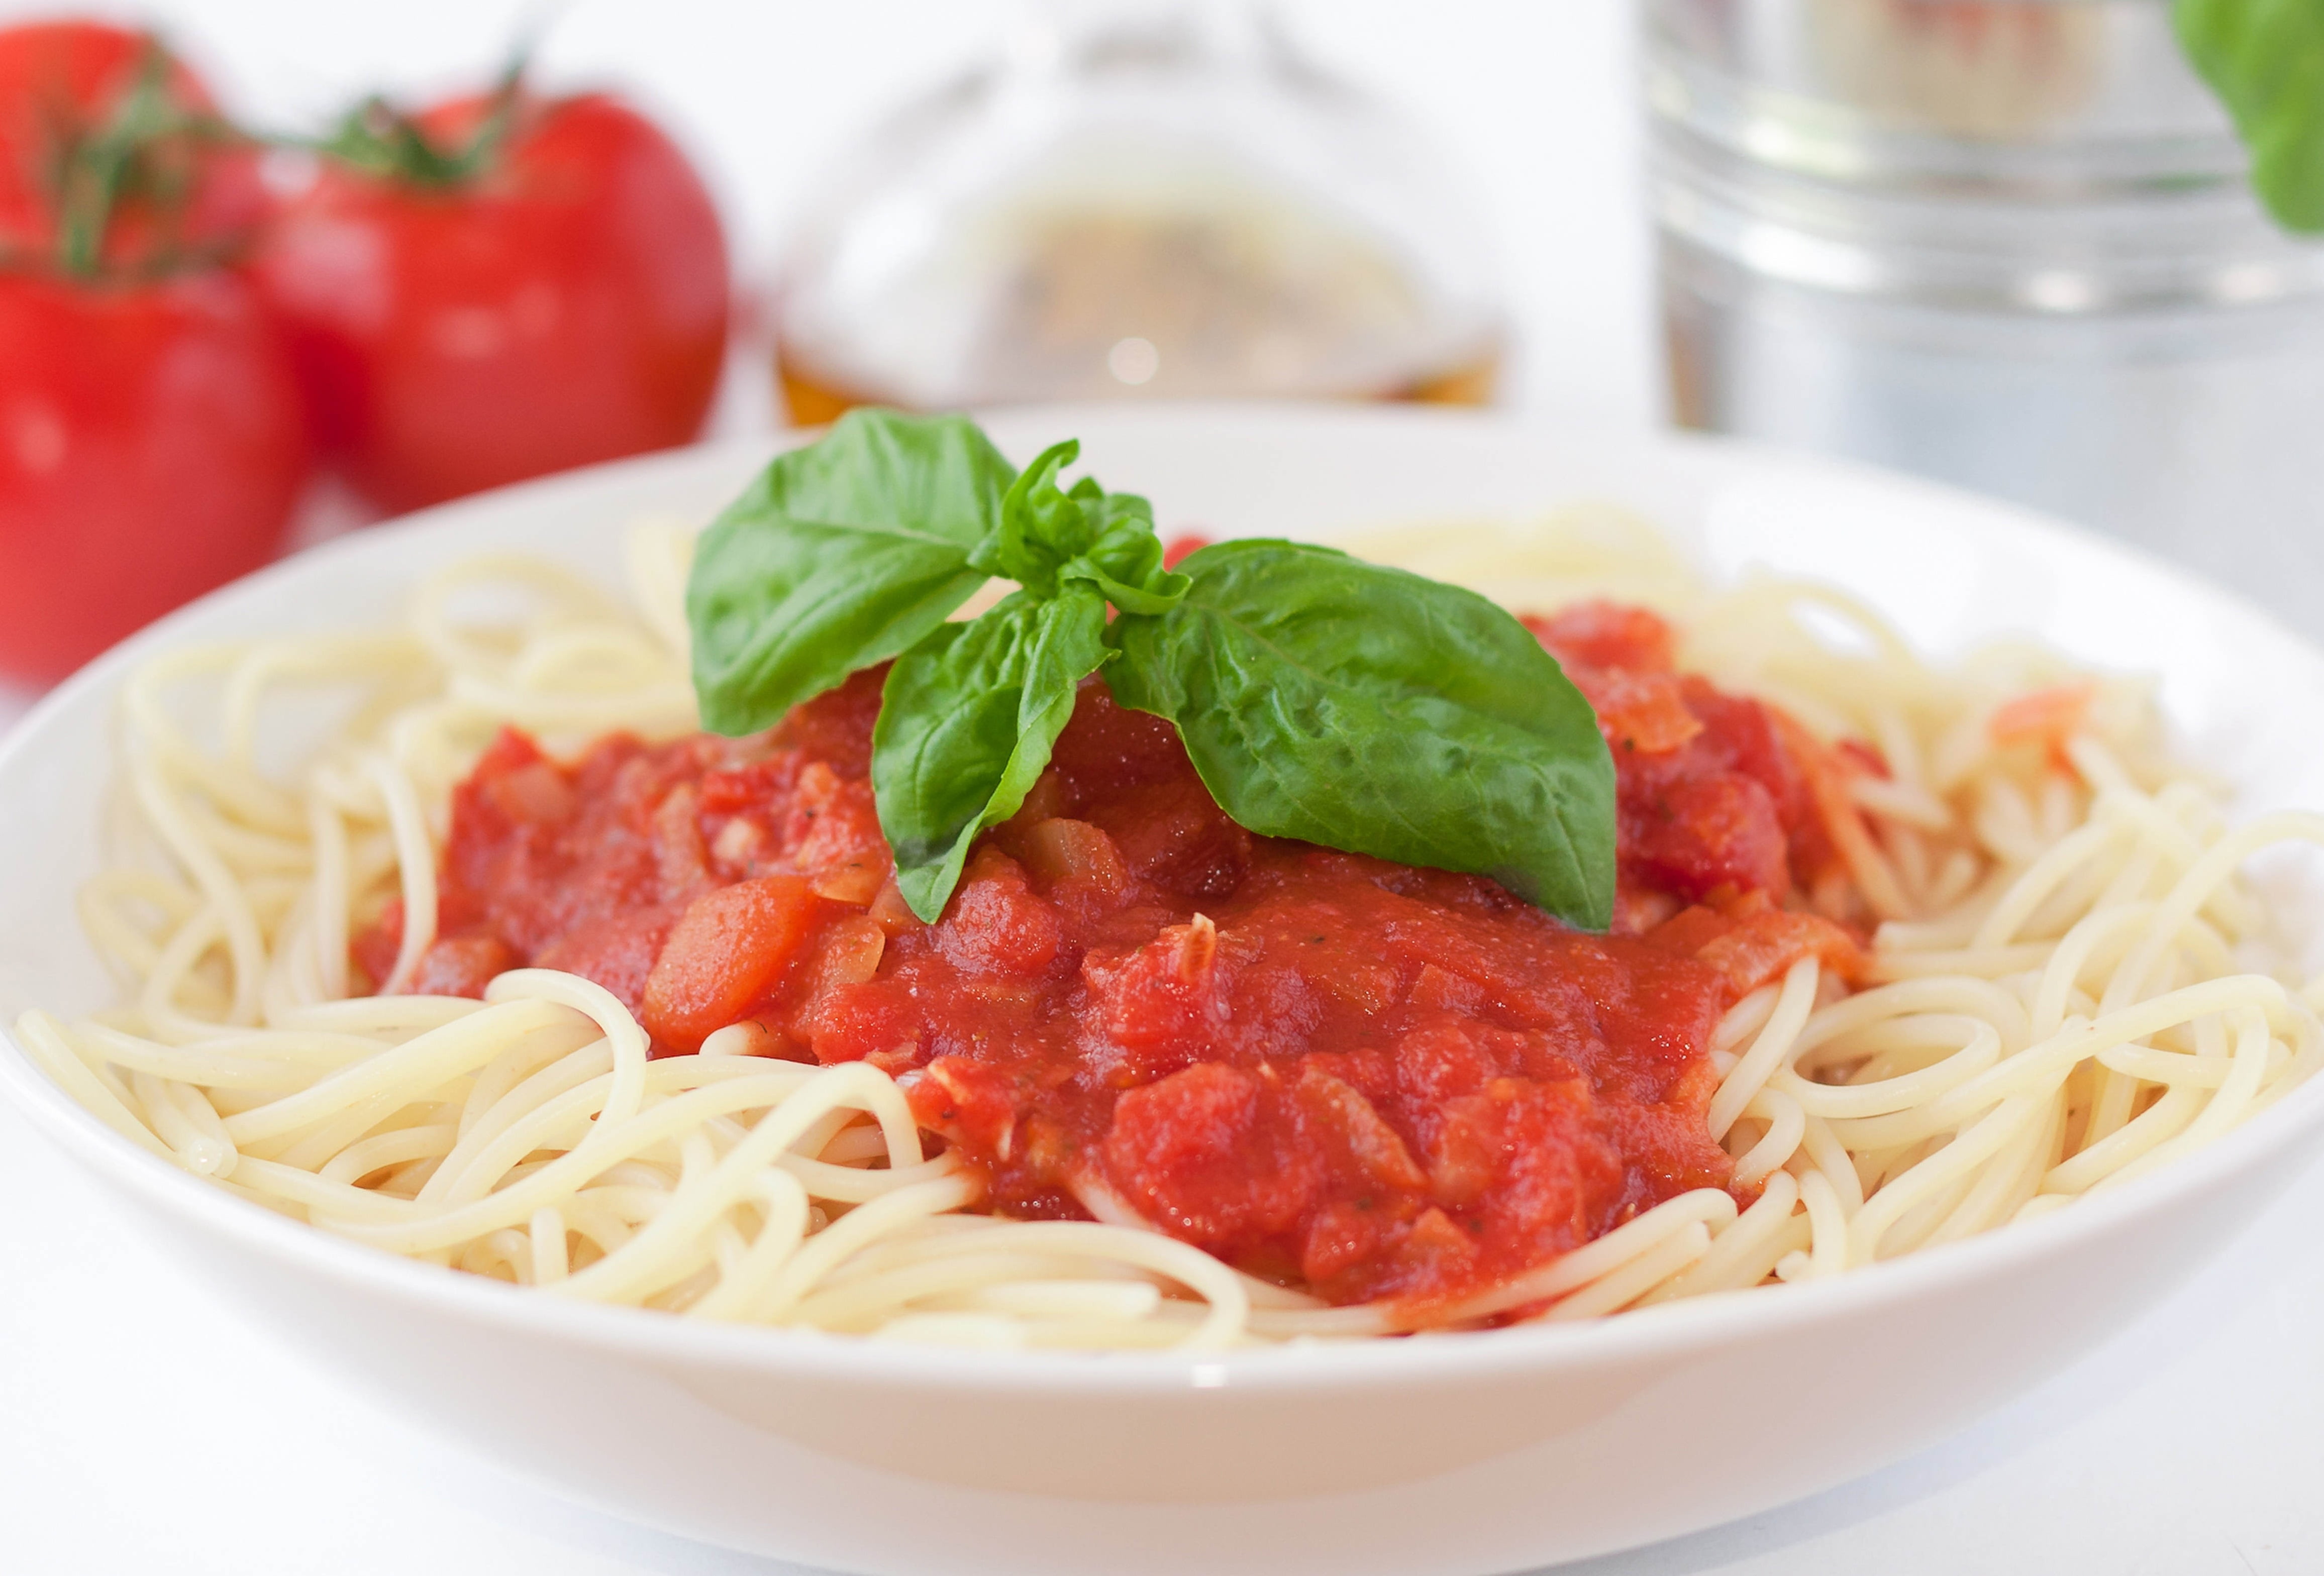 Спагетти болоньезе томатная паста. Спагетти неаполитано. Соус с помидорами для спагетти. Спагетти в томатном соусе. Паста с томатным соусом.